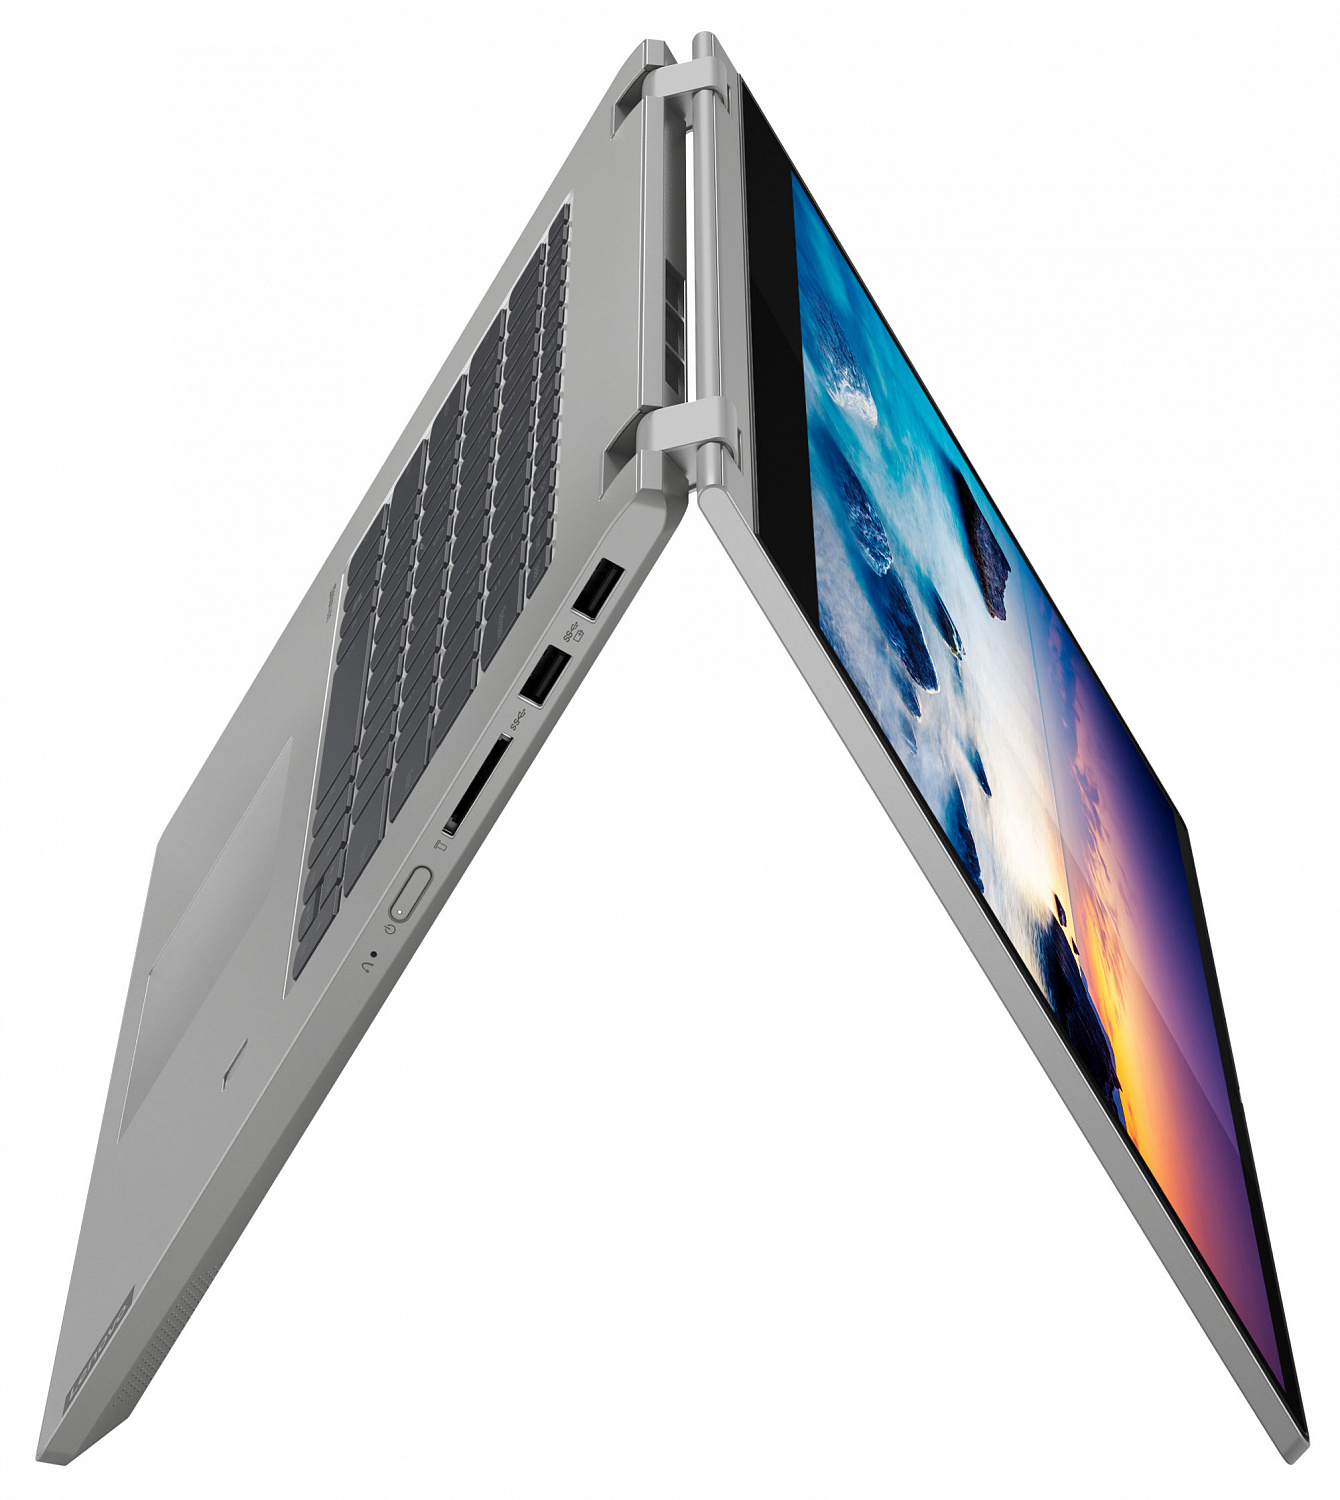 Купить Ноутбук Lenovo IdeaPad C340-15IWL Platinum (81N5008MRA) - ITMag